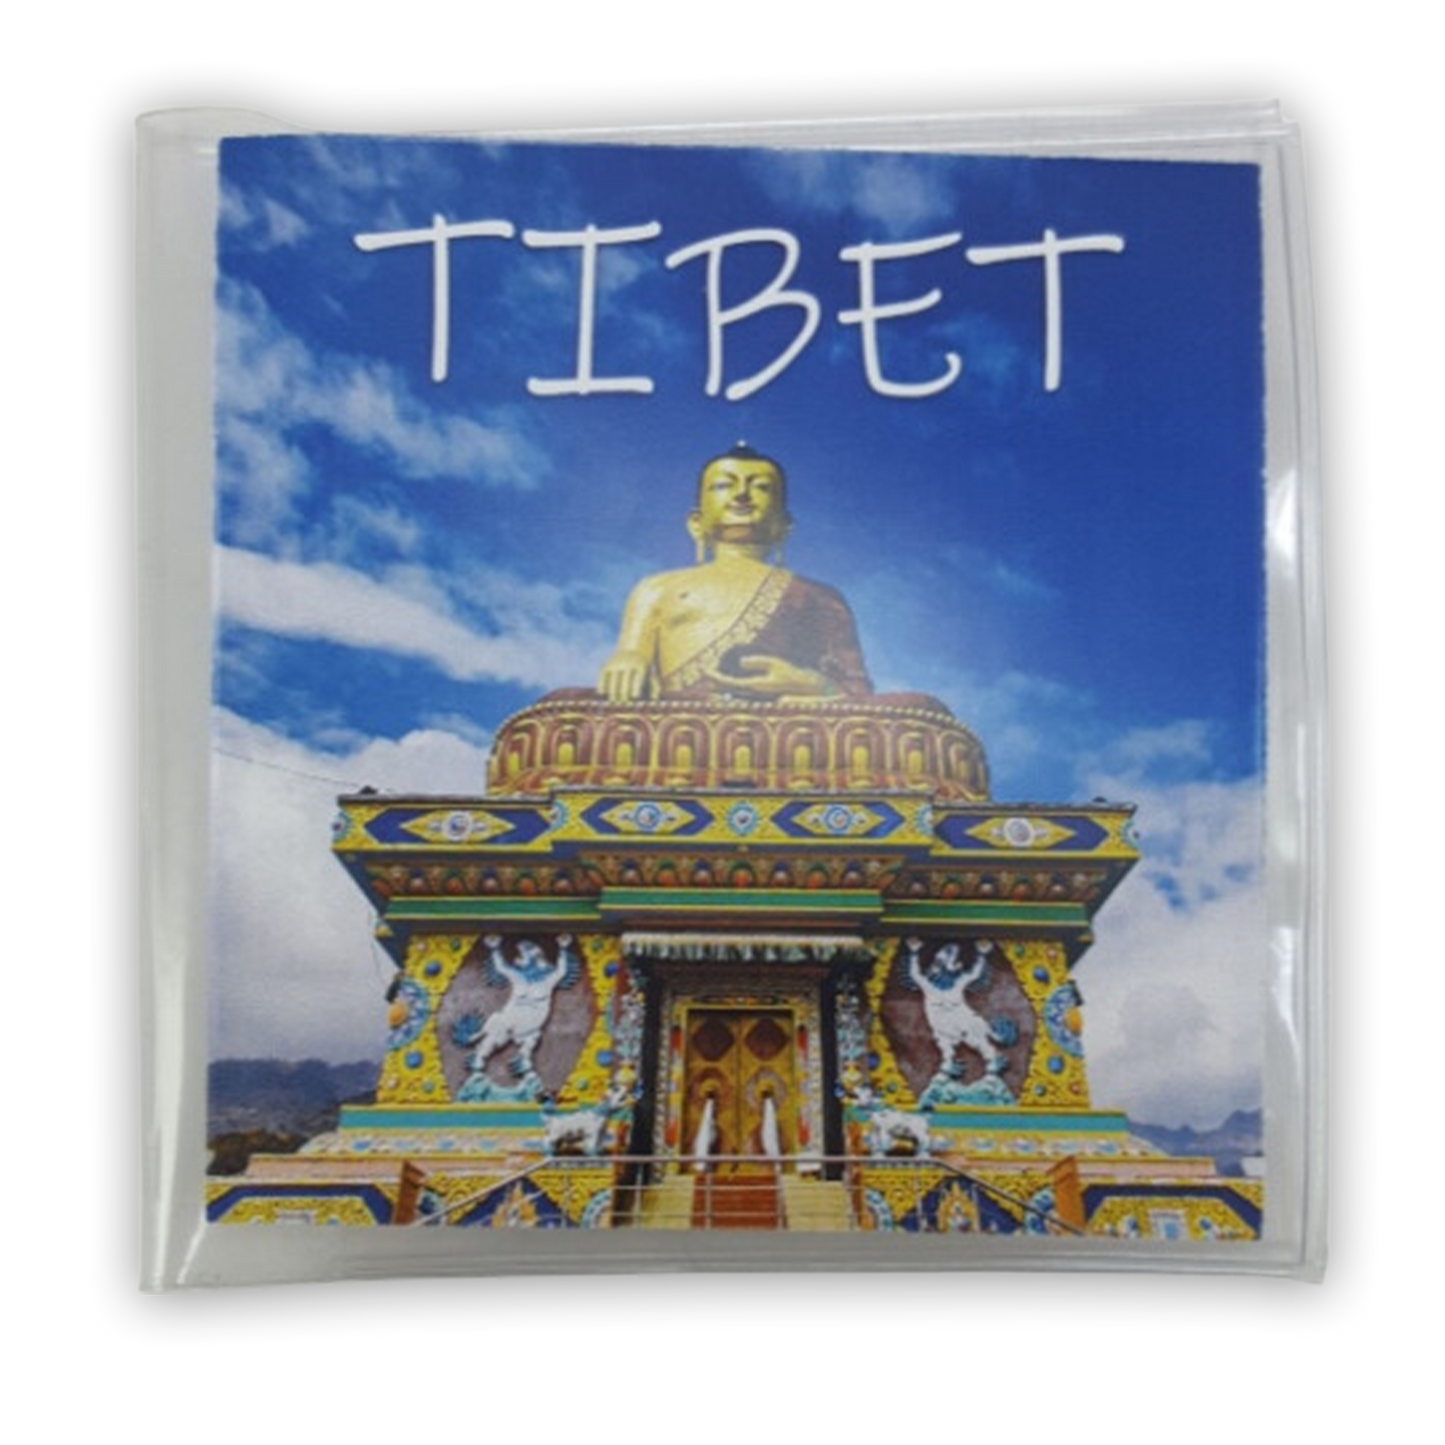 Tibet mini album